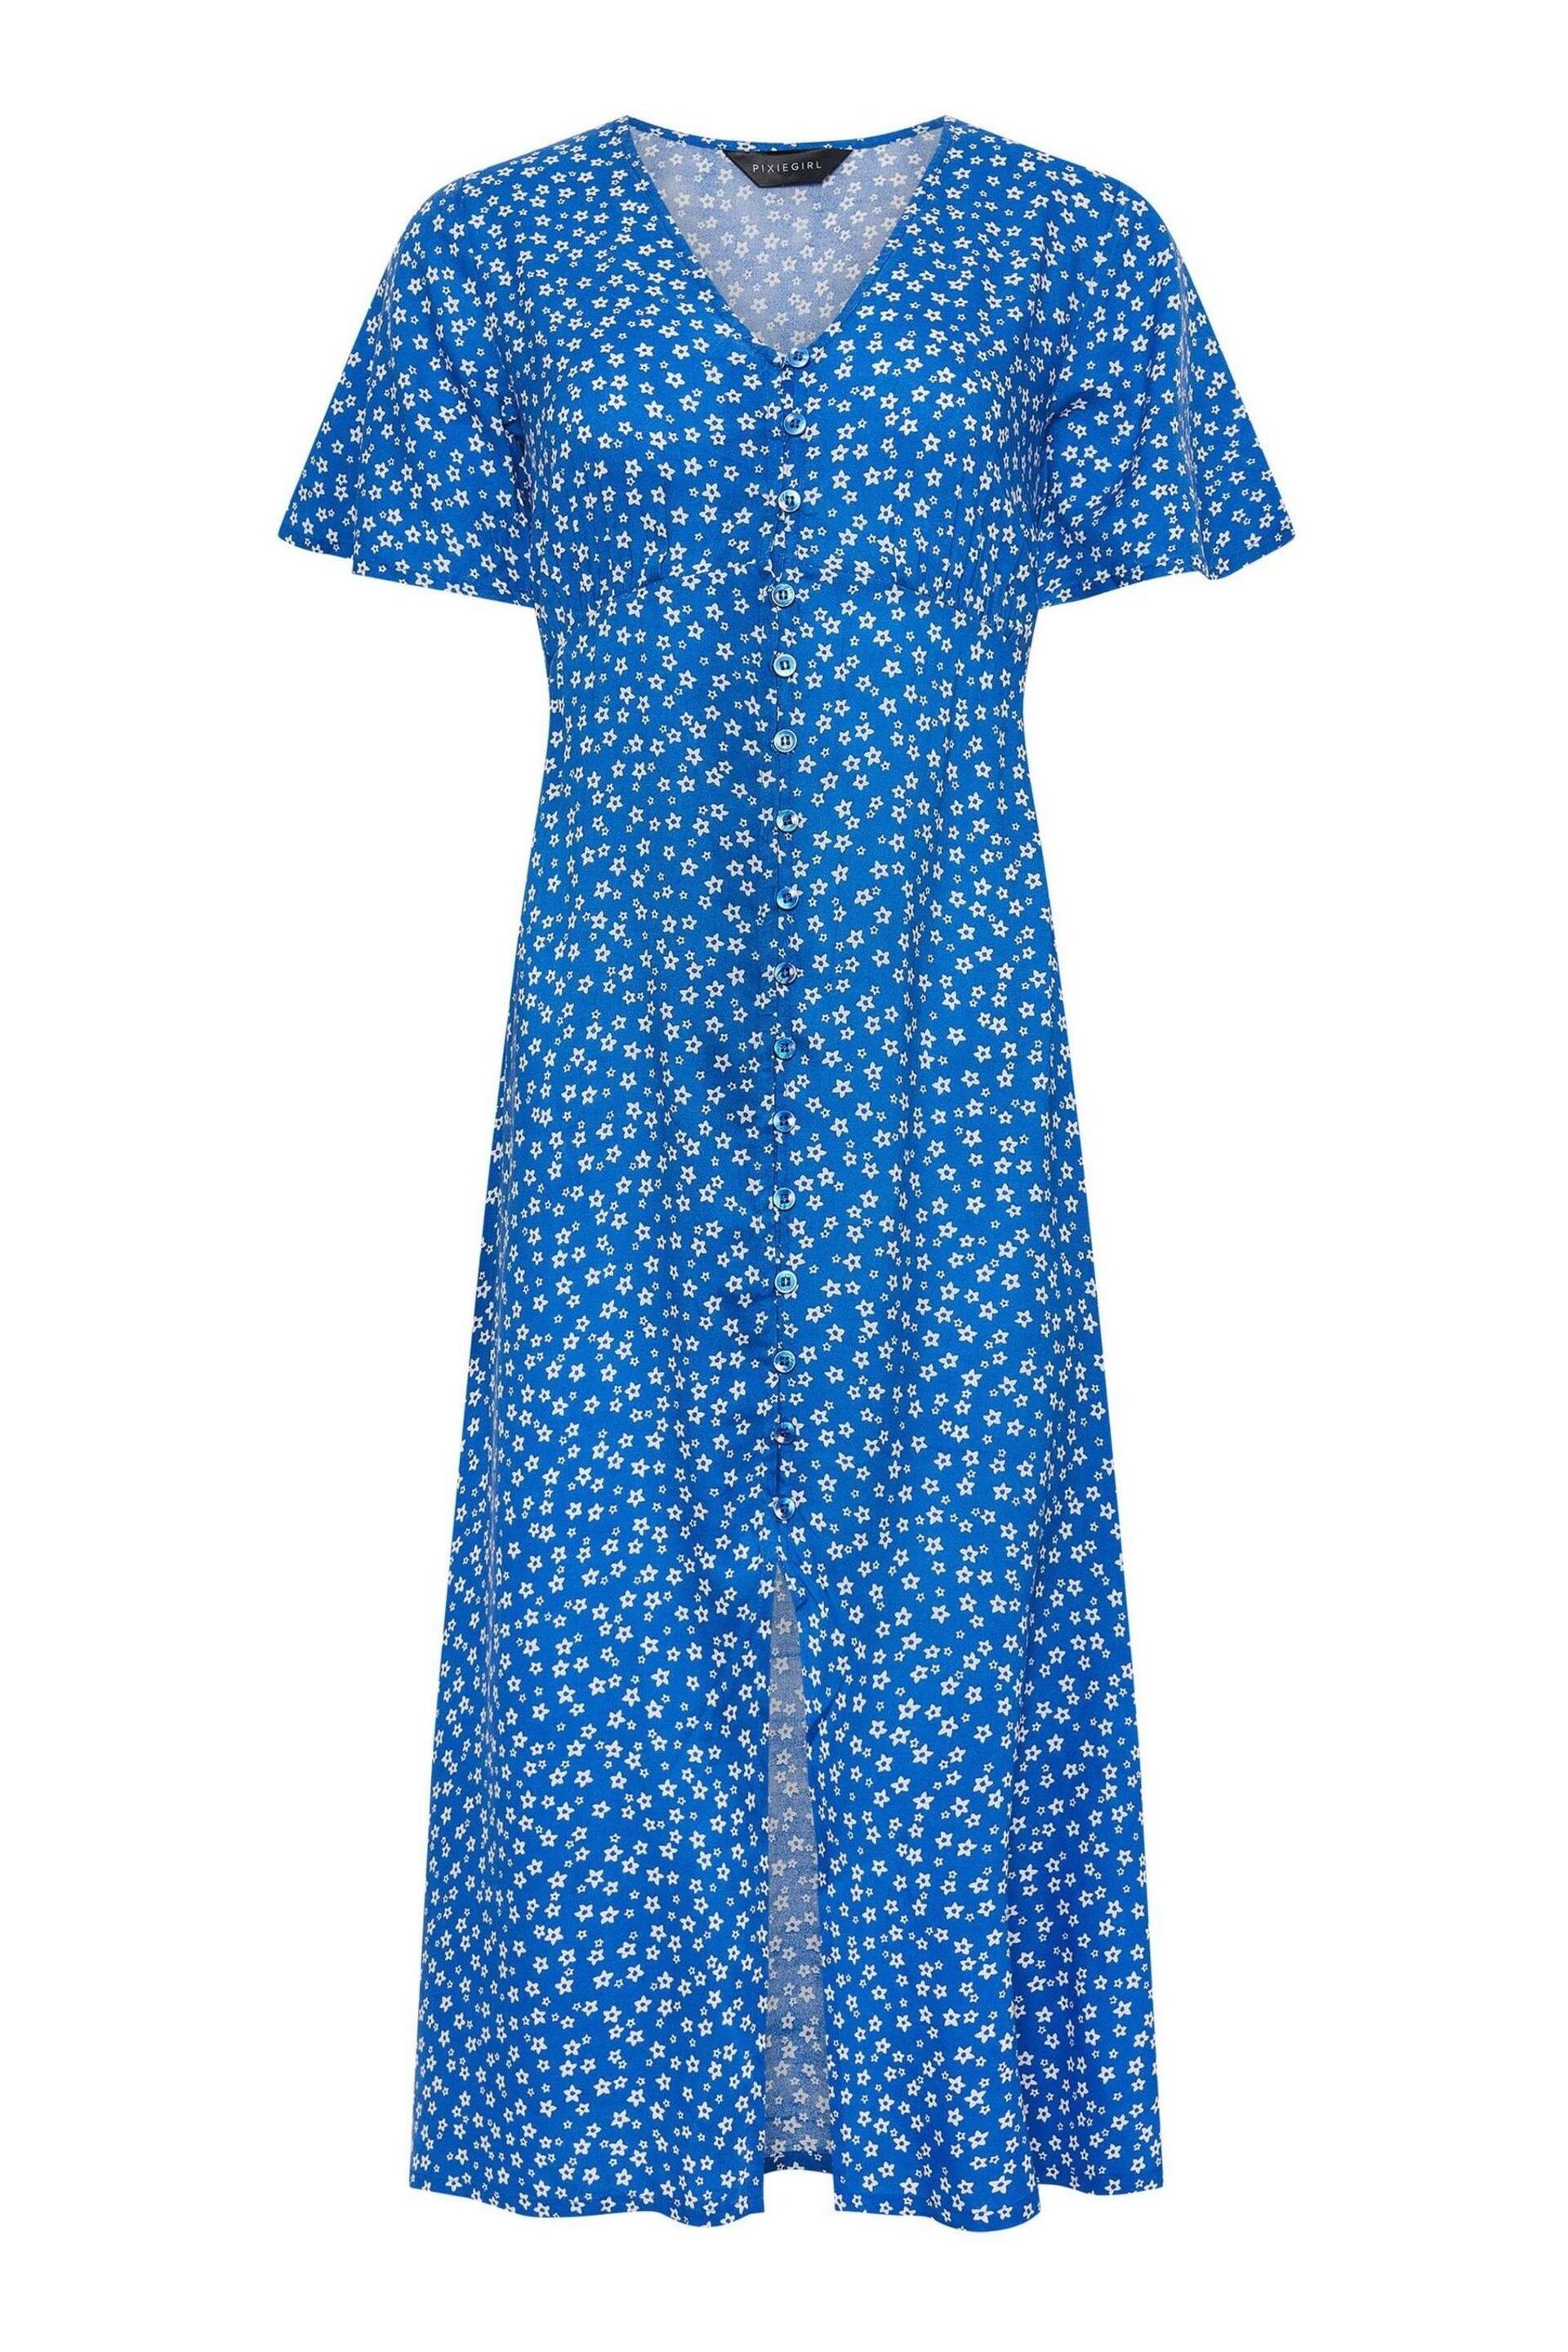 PixieGirl Petite Blue l Blue Ditsy Floral Print Button Front Midi Dress - Image 6 of 6